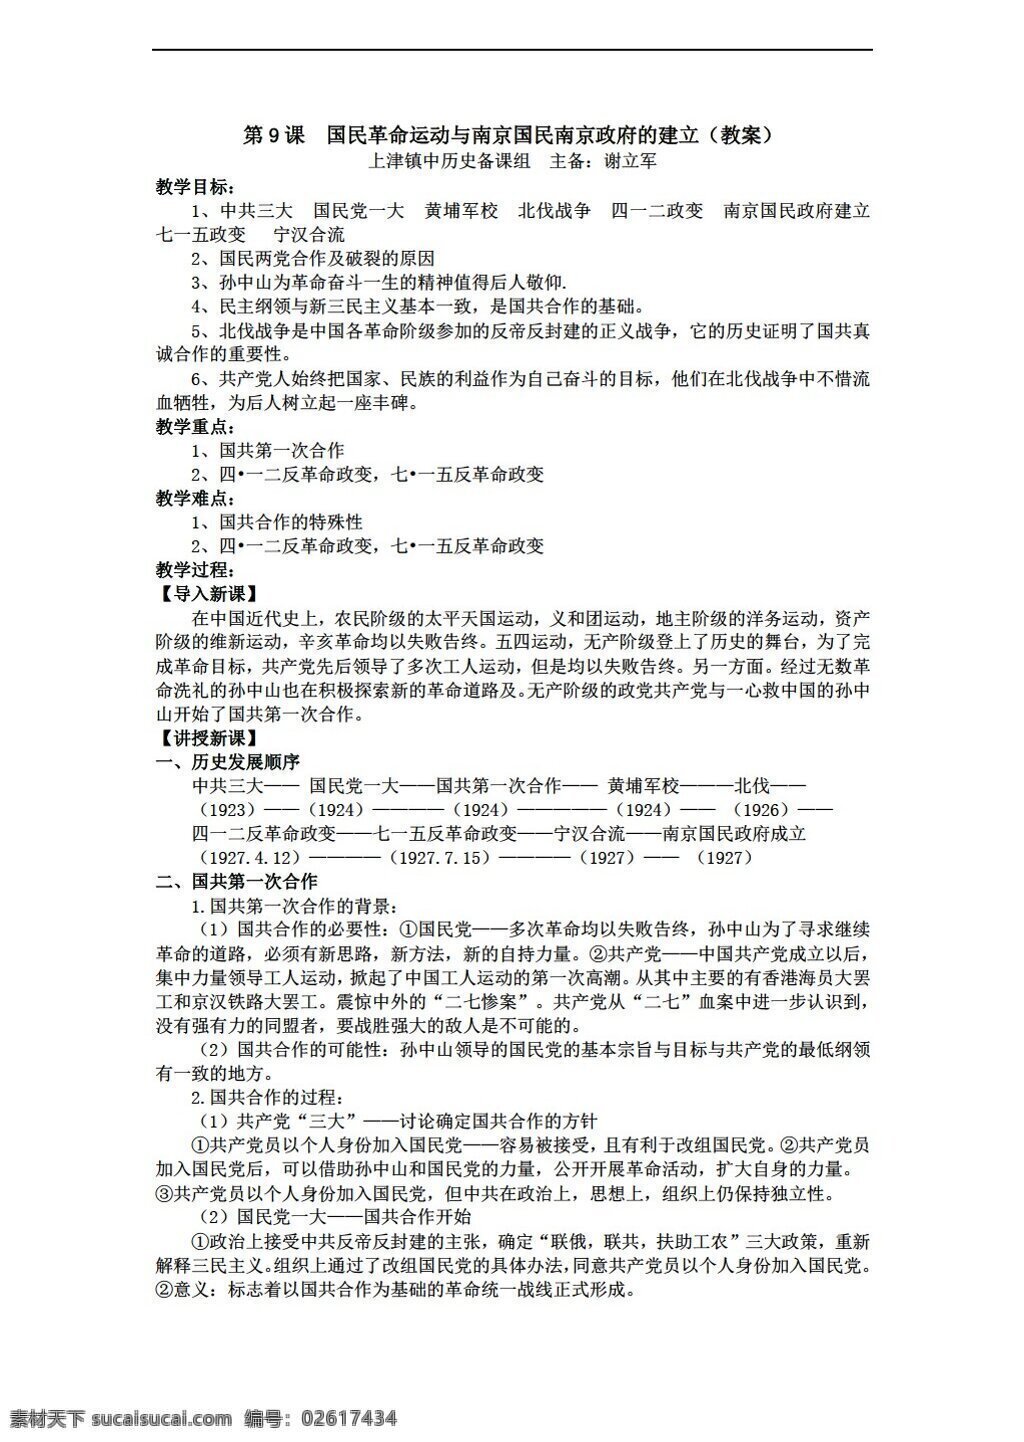 八 年级 上册 历史 课 国民 革命 运动 南京 南京政府 建立 教案 华师大版 八年级上册